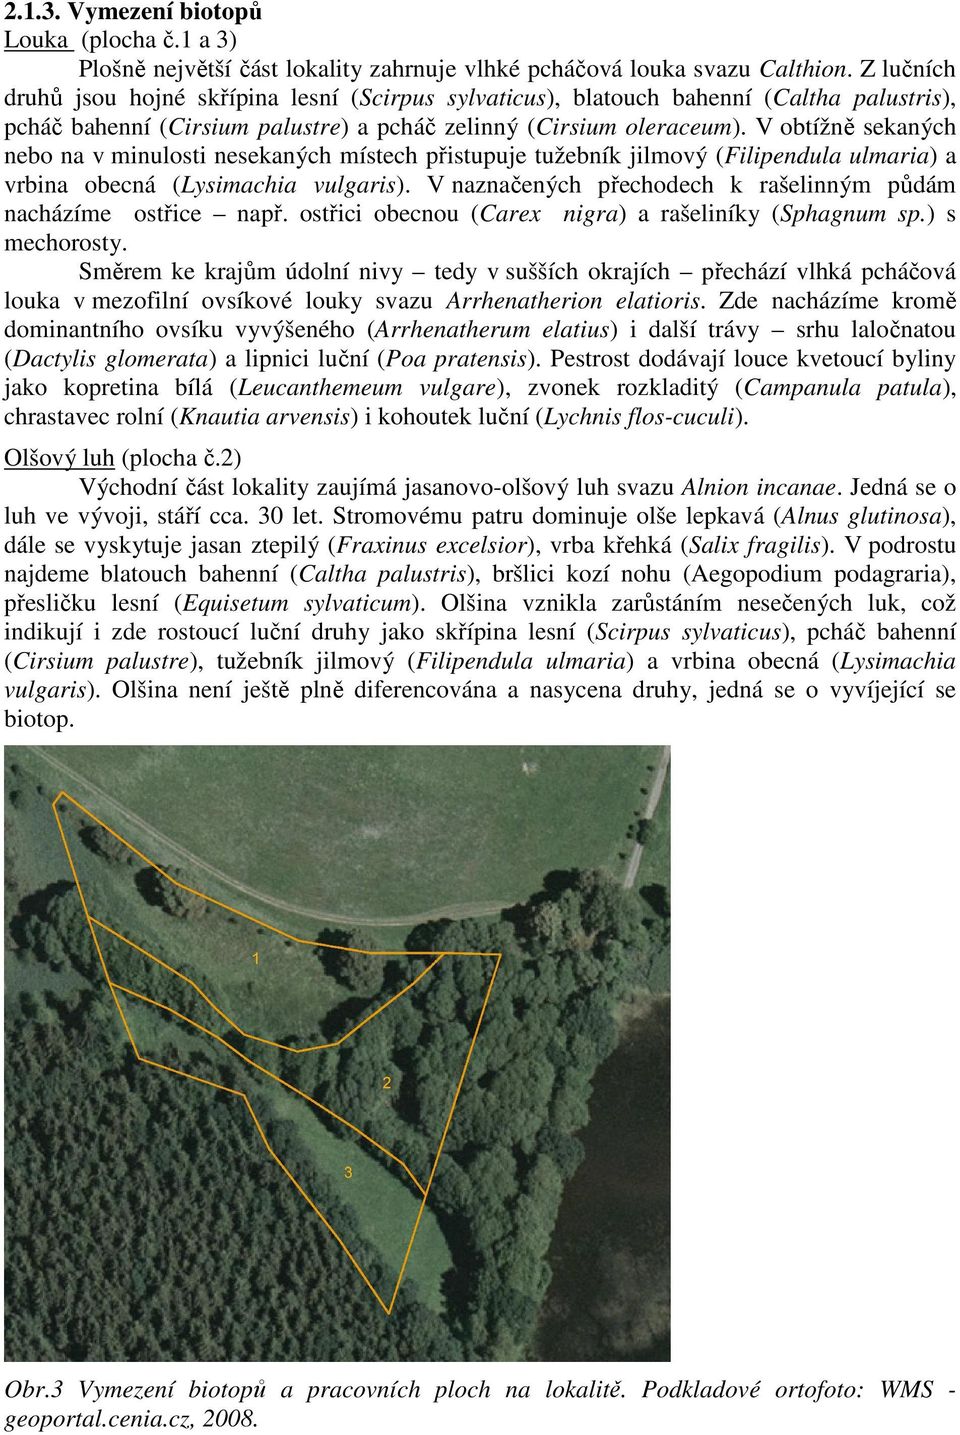 V obtížně sekaných nebo na v minulosti nesekaných místech přistupuje tužebník jilmový (Filipendula ulmaria) a vrbina obecná (Lysimachia vulgaris).